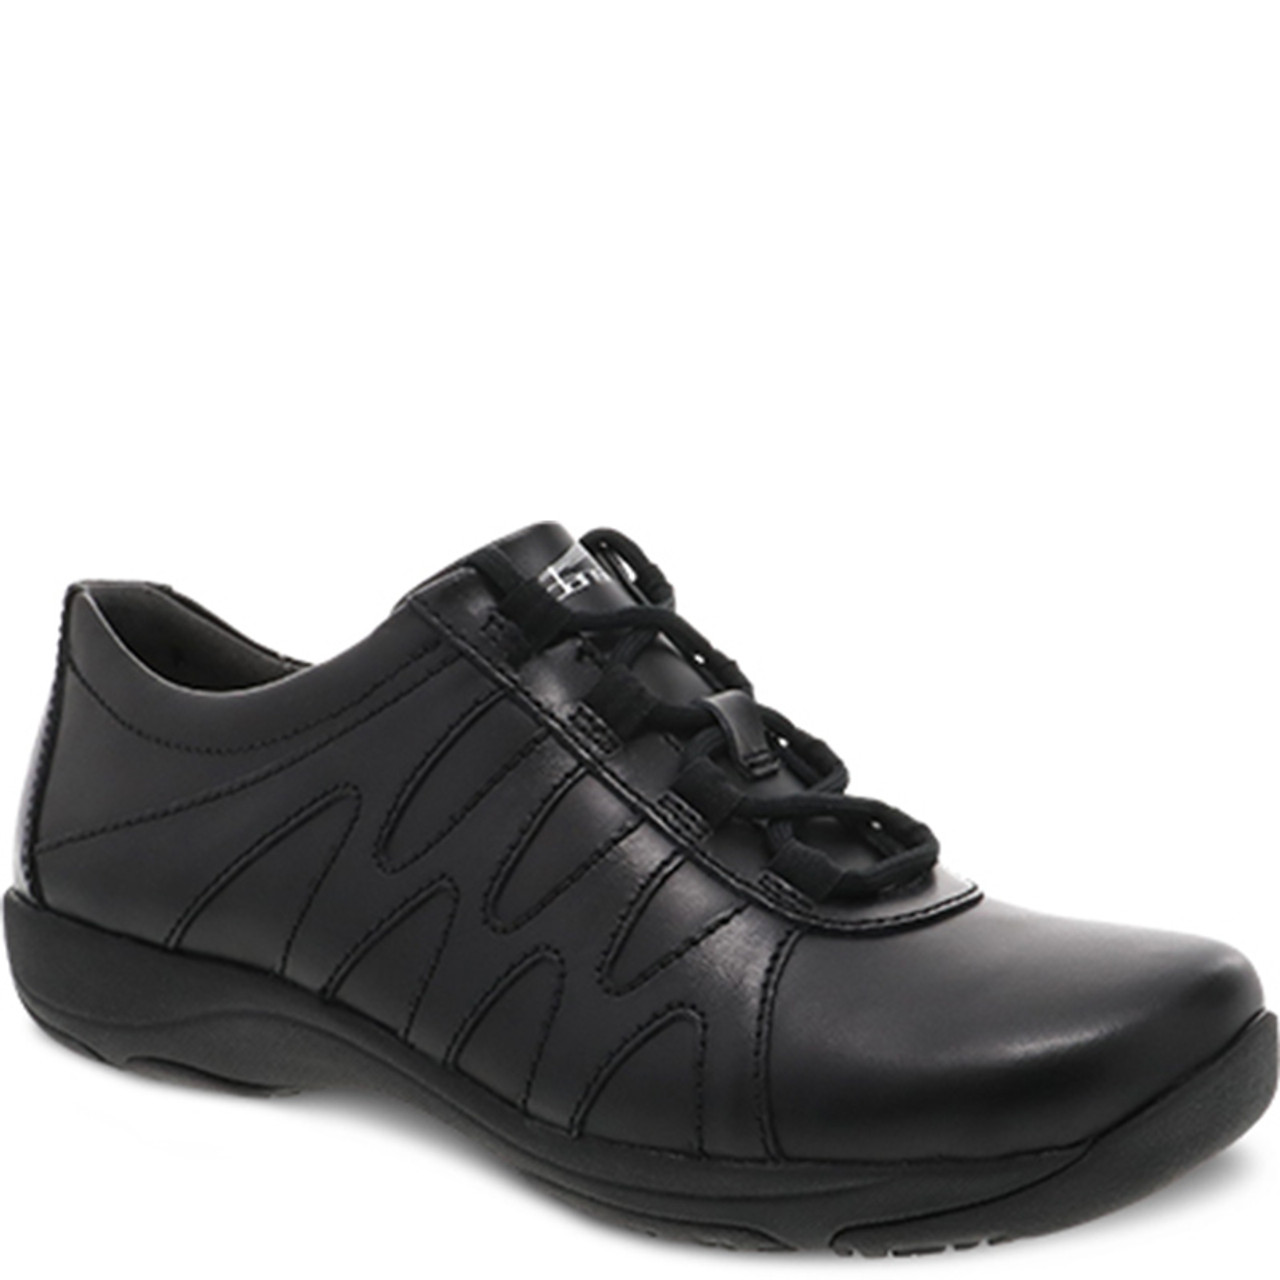 dansko shoes slip resistant